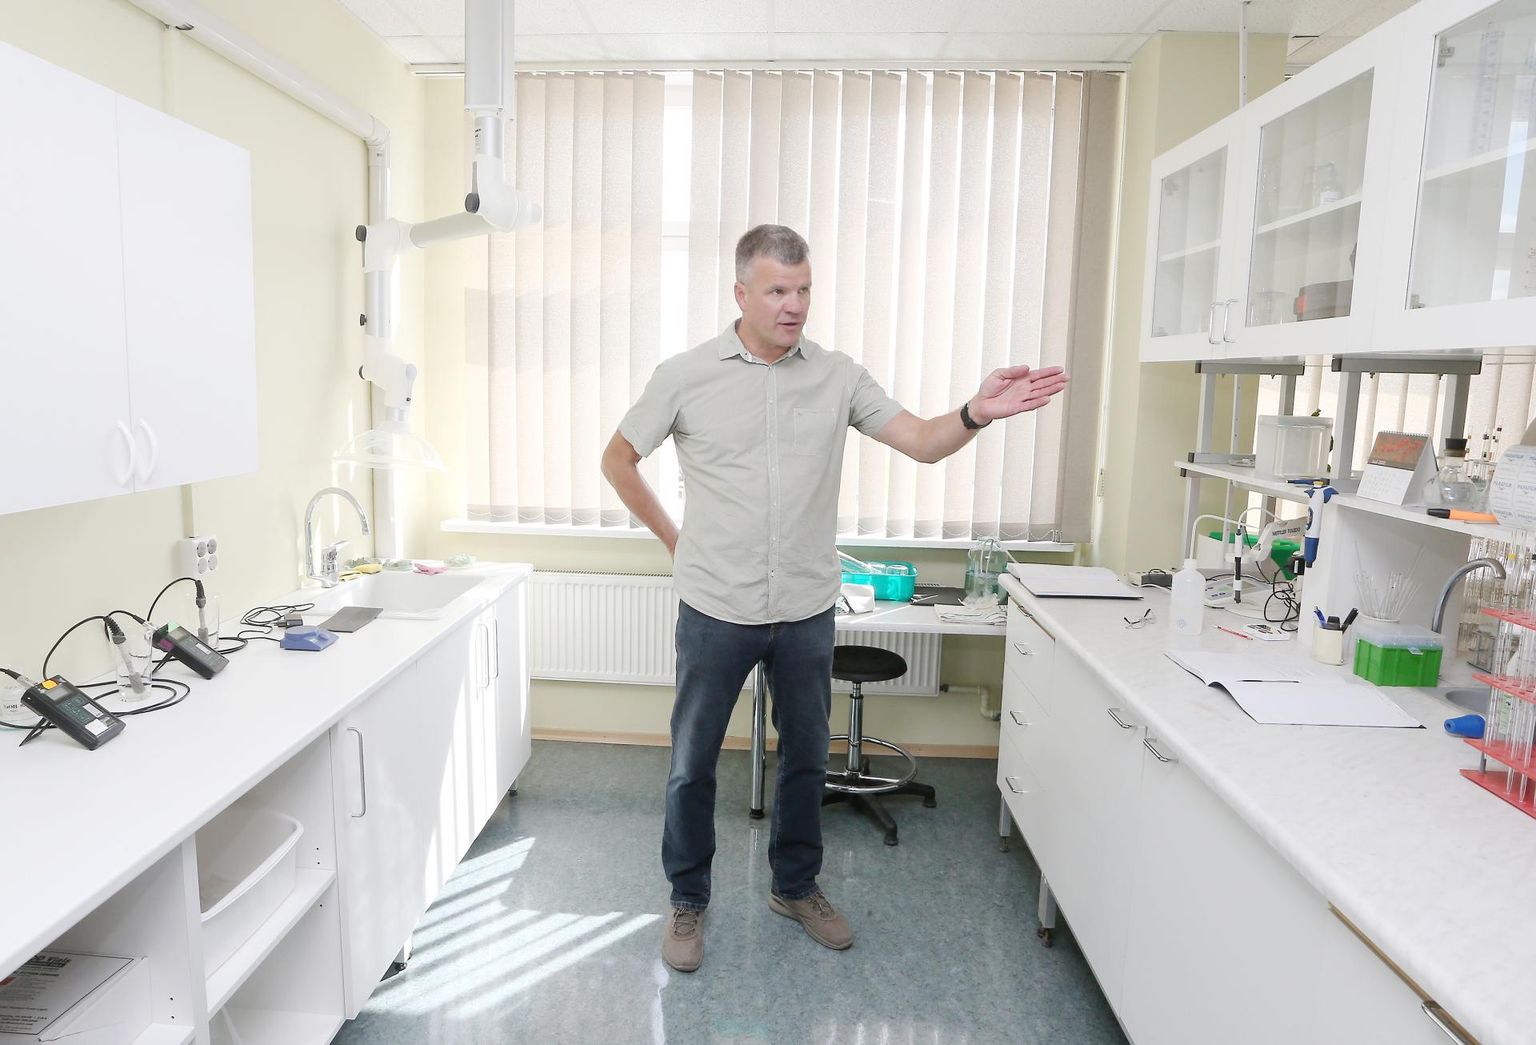 Tartu veevärgi juhataja Toomas Kapp ütles, et koroonat või narkootikume nende laboris reoveest otsida ei saa, küll aga võetakse selles laboris iga päev joogi- ja reovee muid proove.